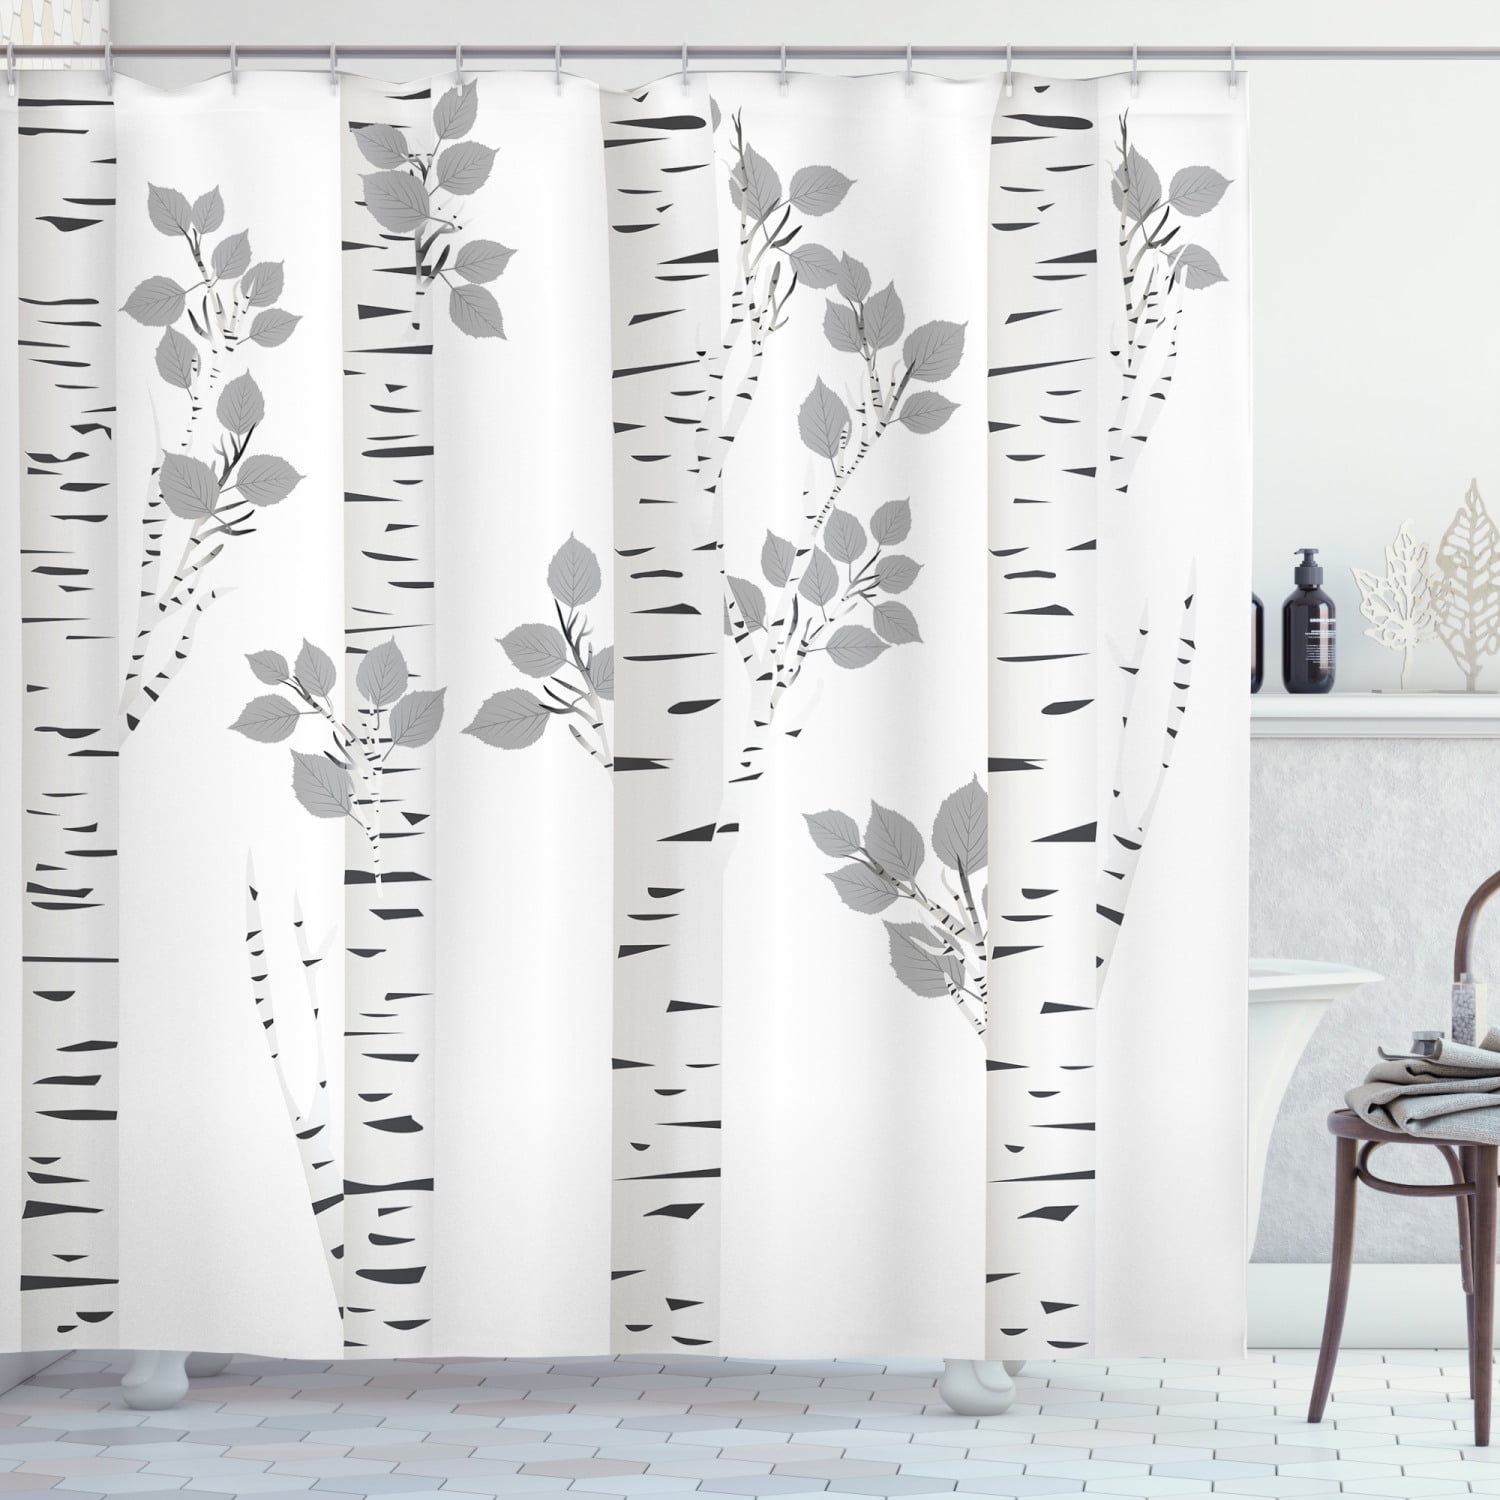 Autumn foggy forest Shower Curtain Bathroom Decor Fabric 12hooks 71" 